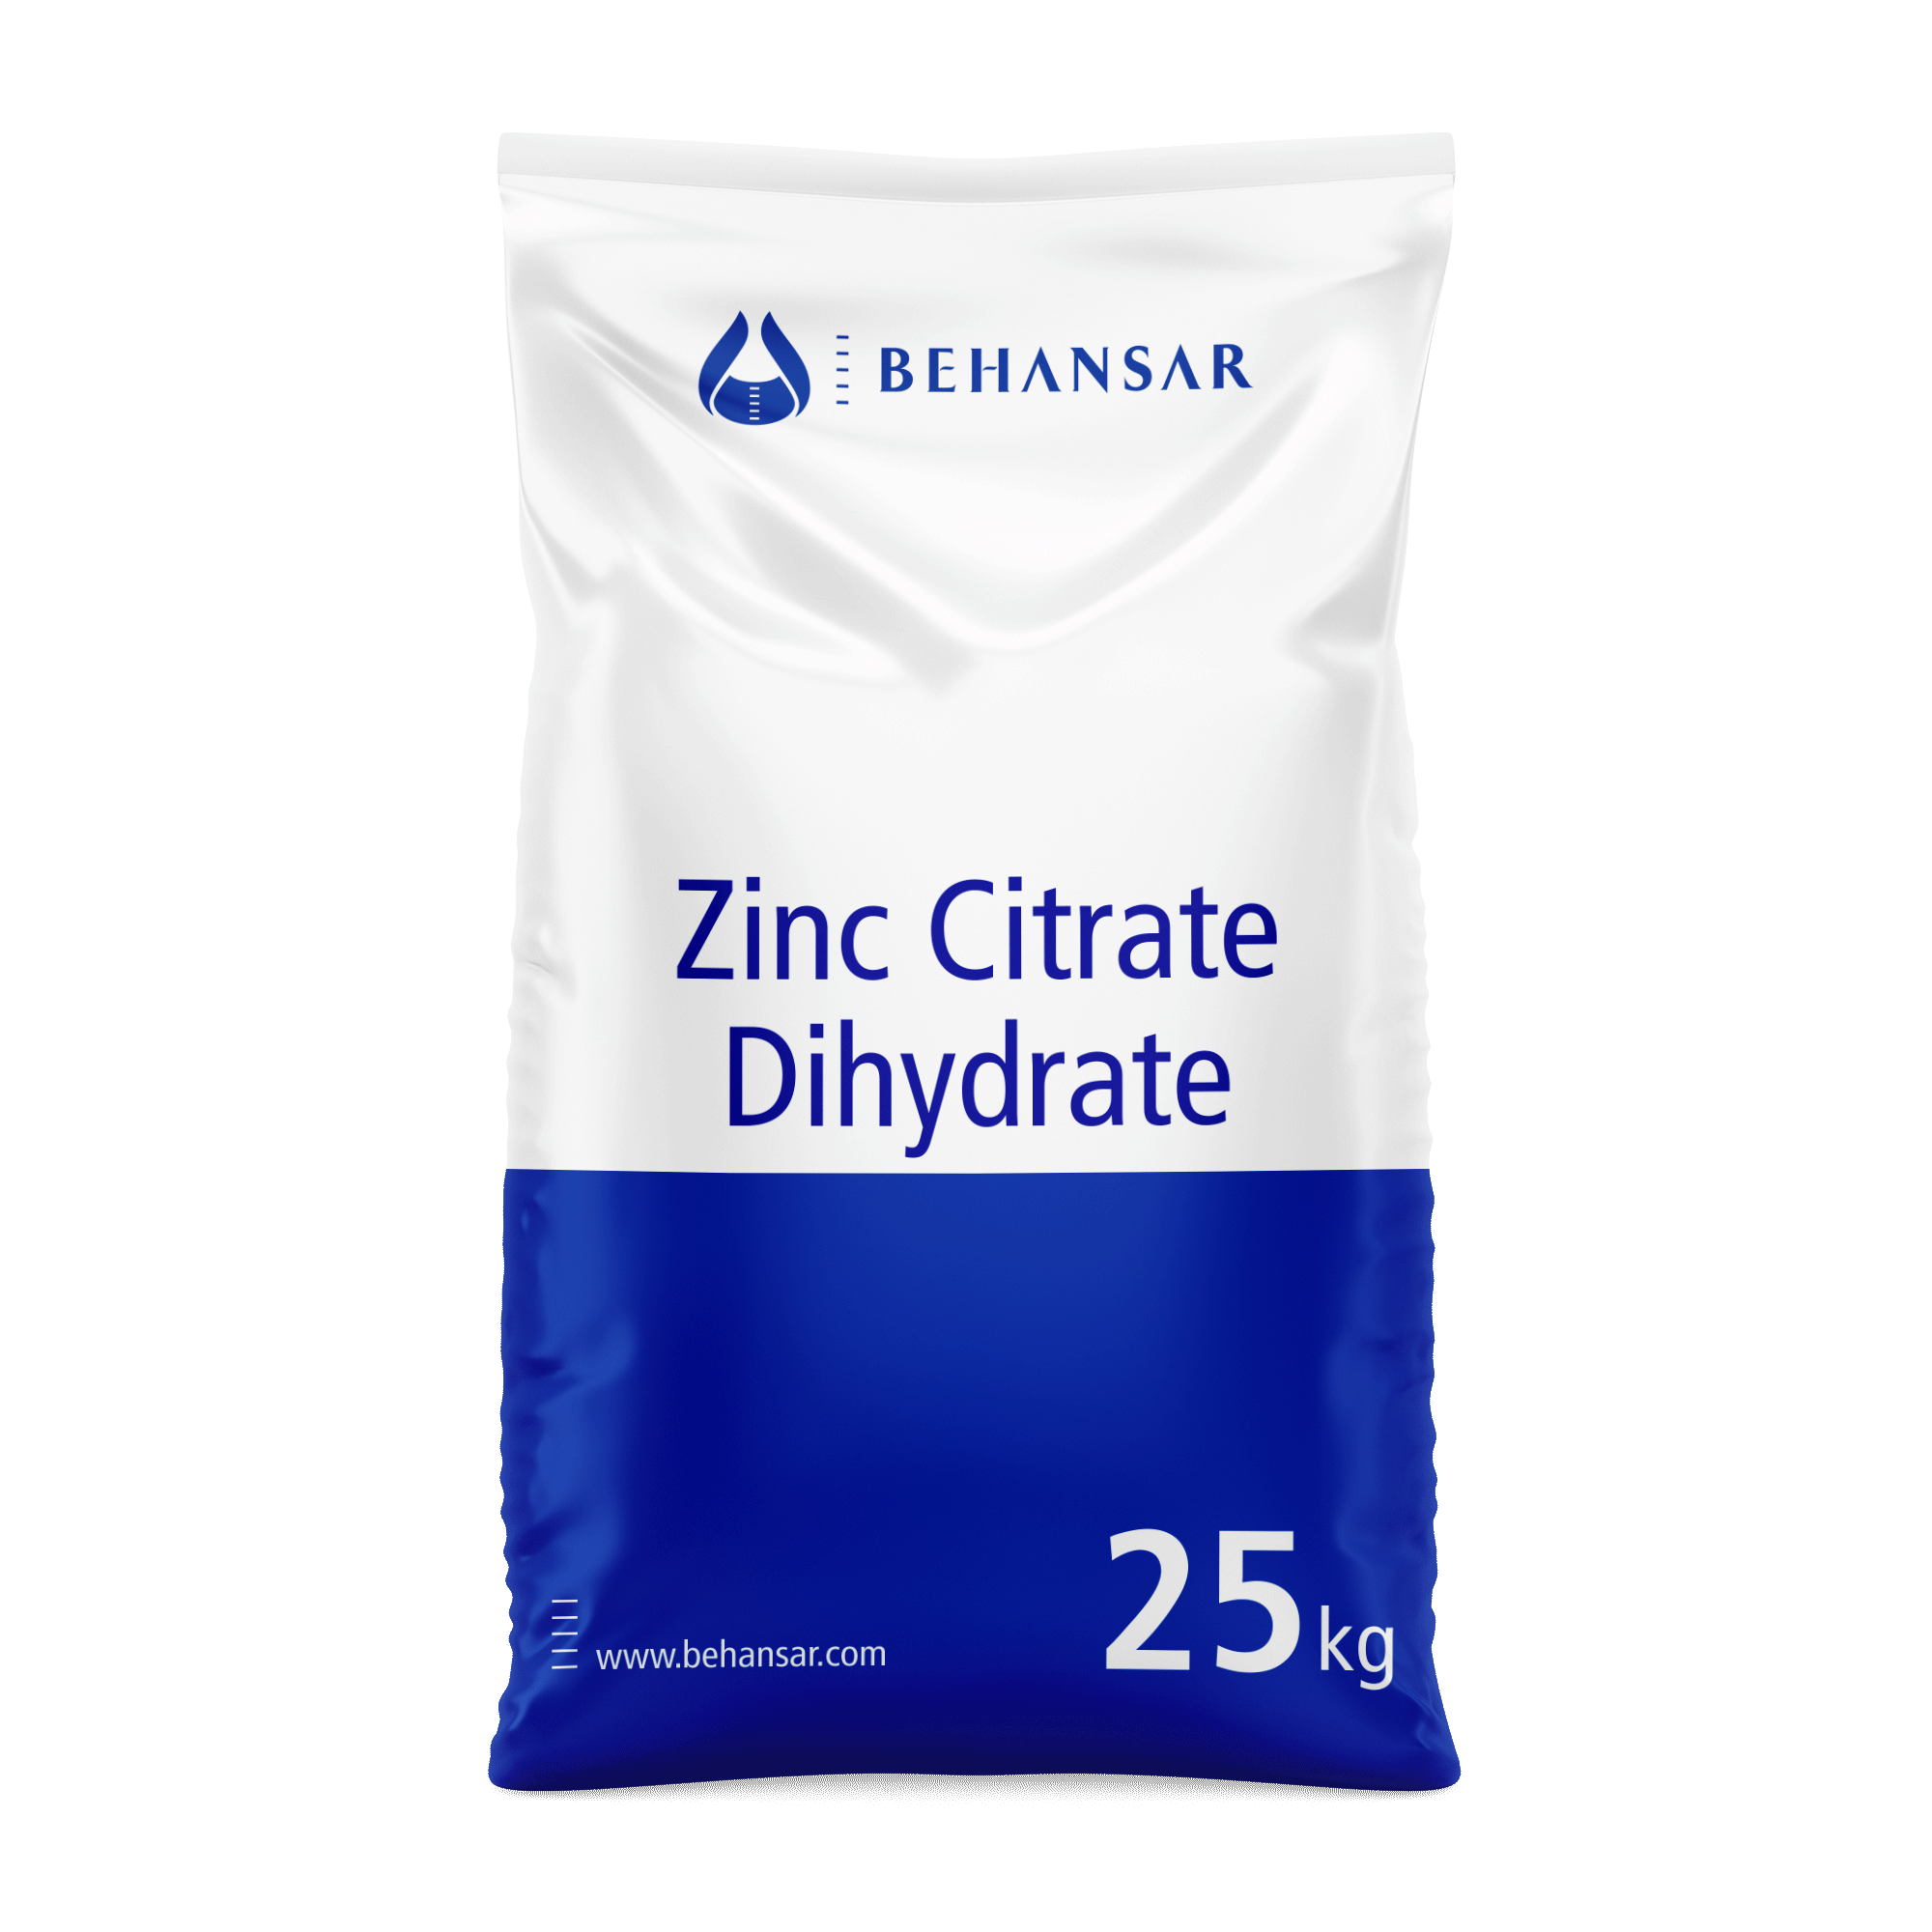 زینک سیترات دی هیدرات یکی از تولیدات شرکت بهانسار است